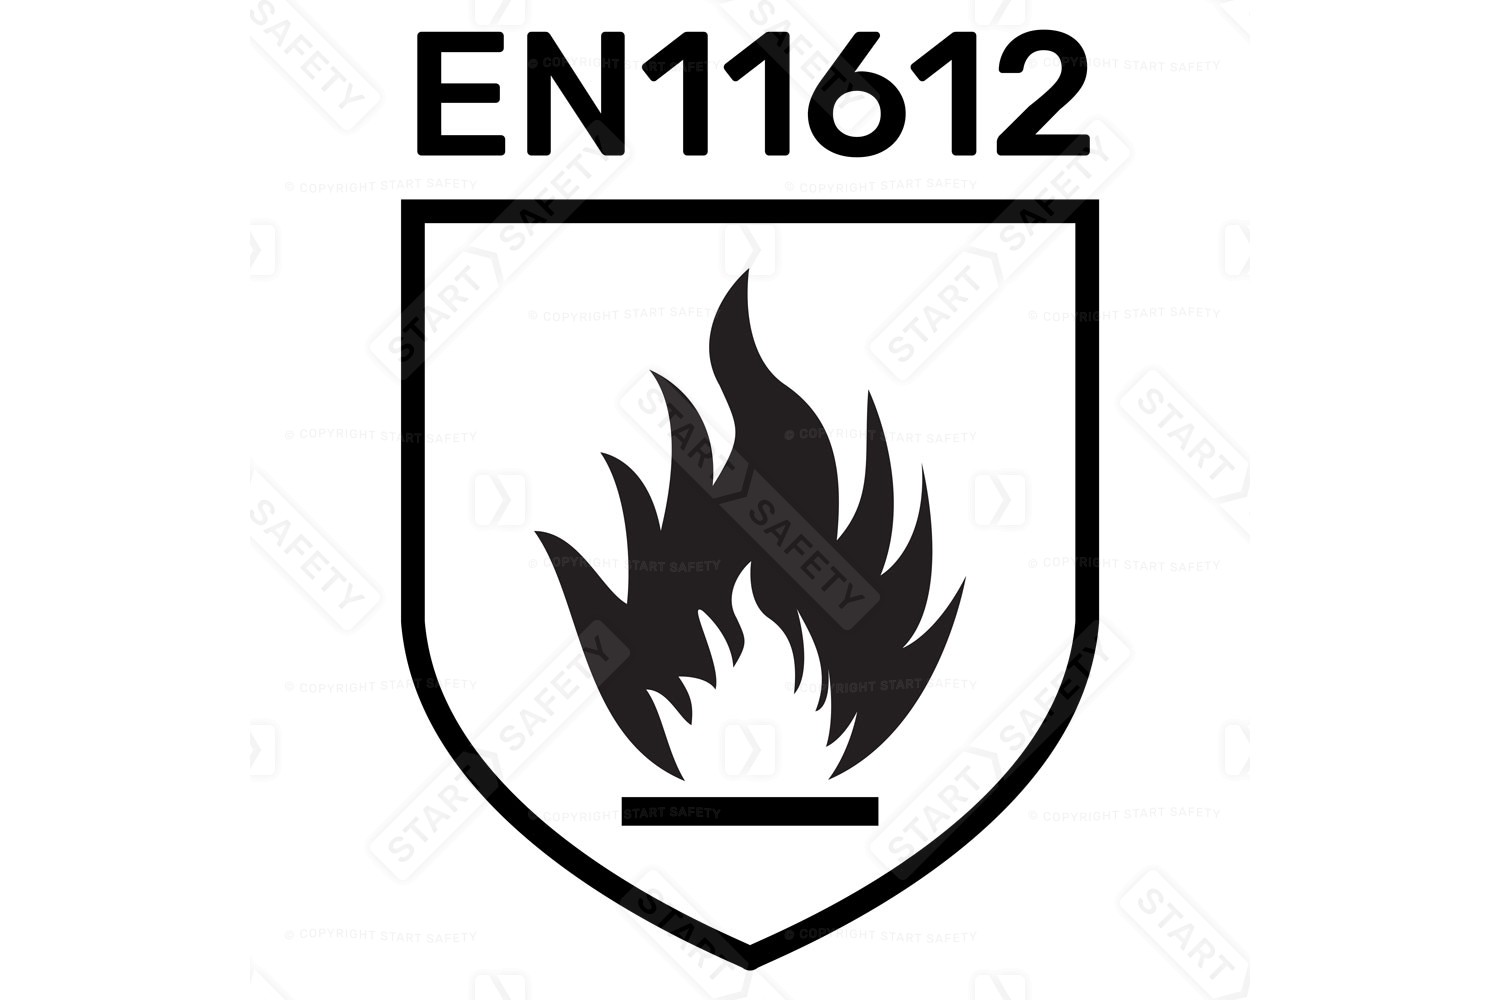 EN 11612 Flame Retardant Workwear Standard Symbol